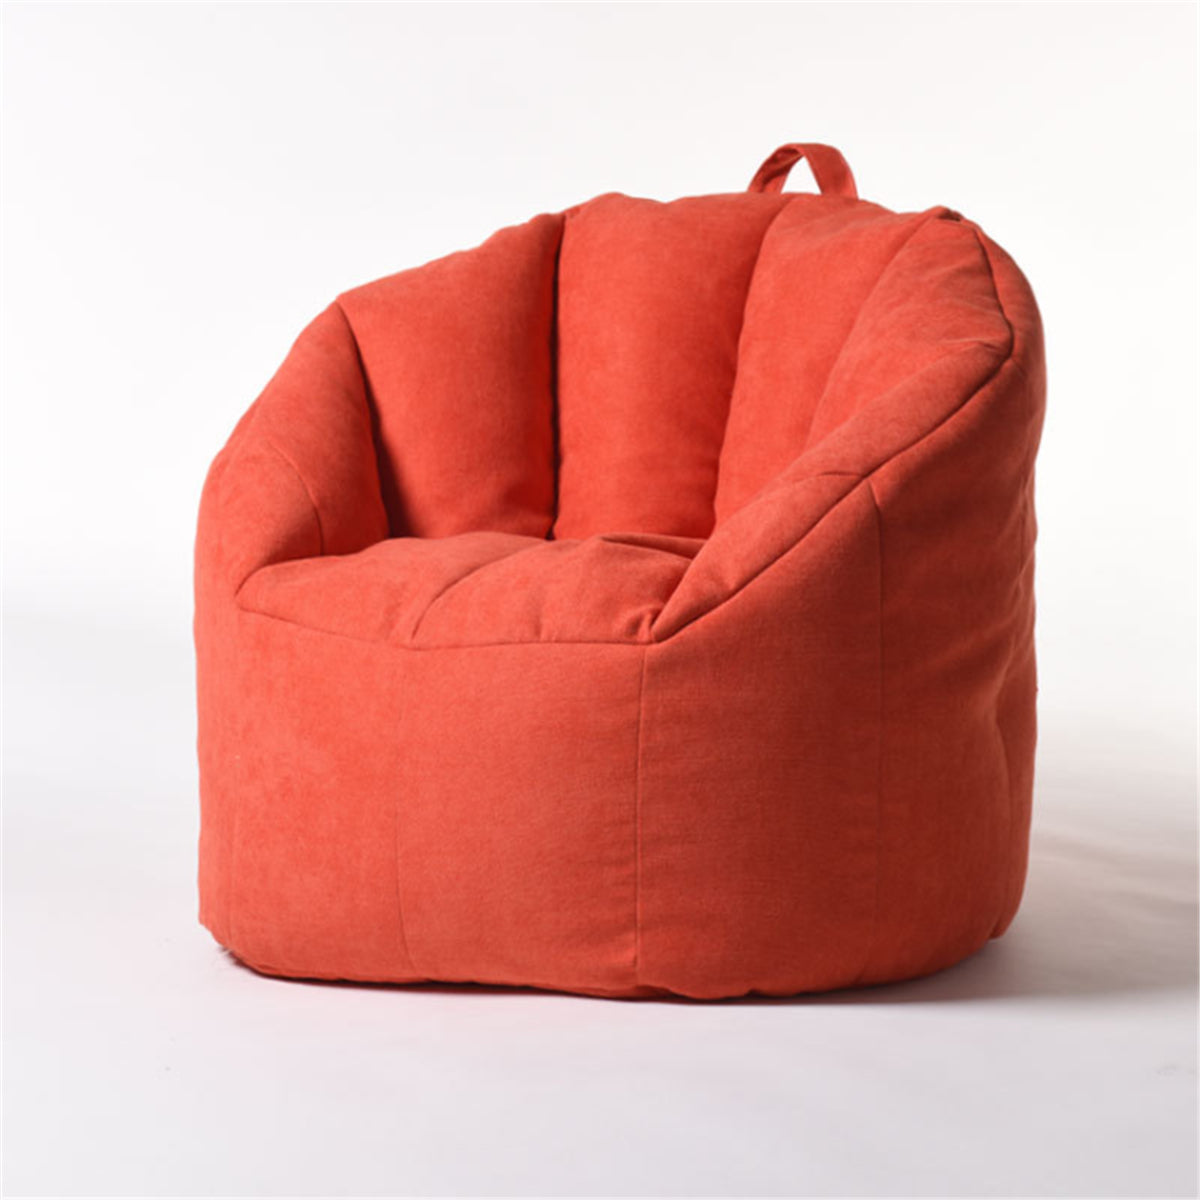 Big Joe Milano Bean Bag Chair Multiple Colors Comfort For Kids & Adult Covers